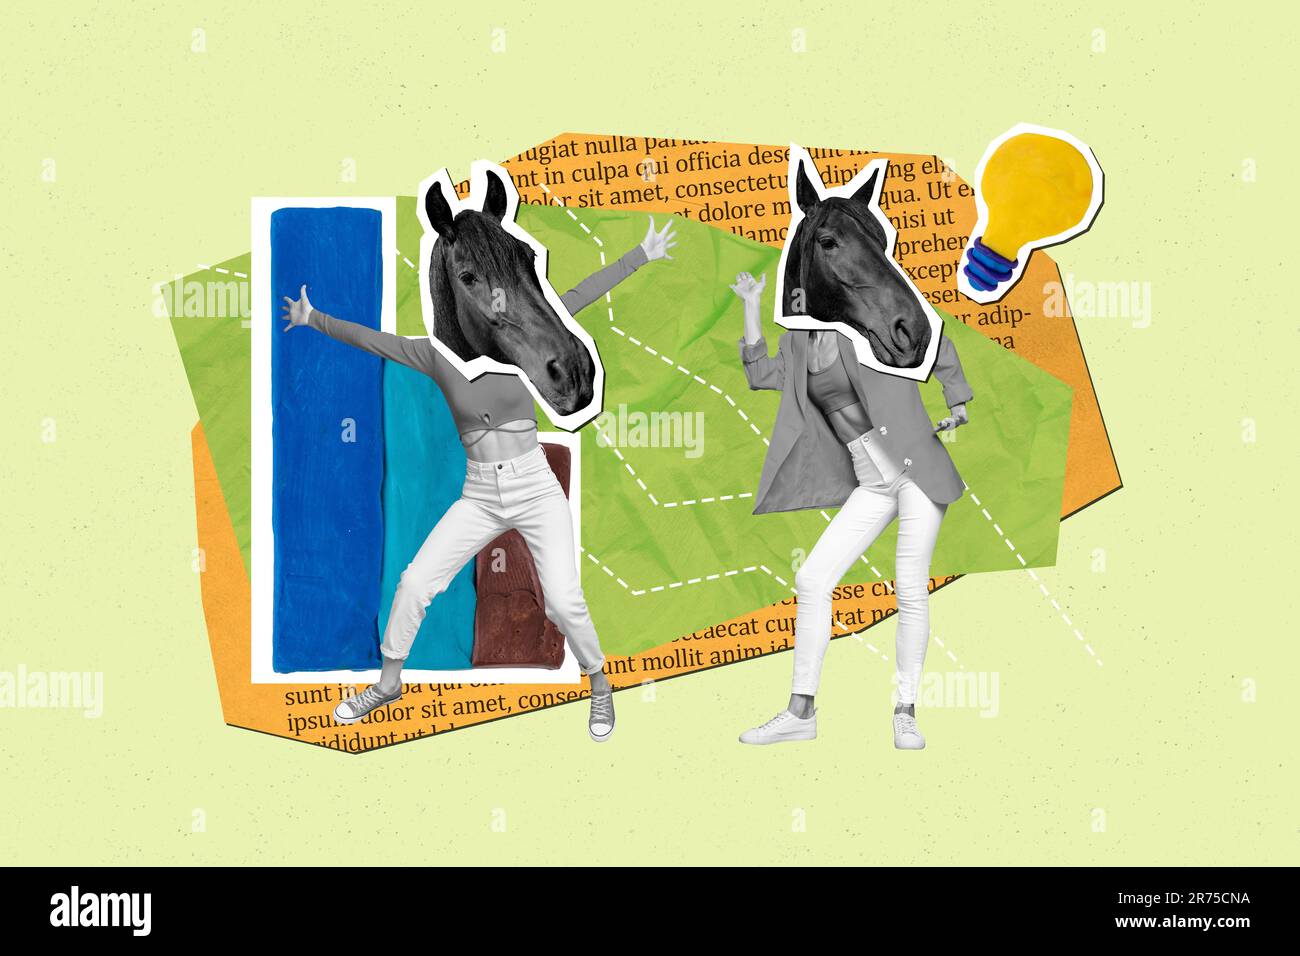 Image de collage de deux couleurs noir blanc filles tête de cheval danse carte de croissance stats ampoule isolée sur fond vert Banque D'Images